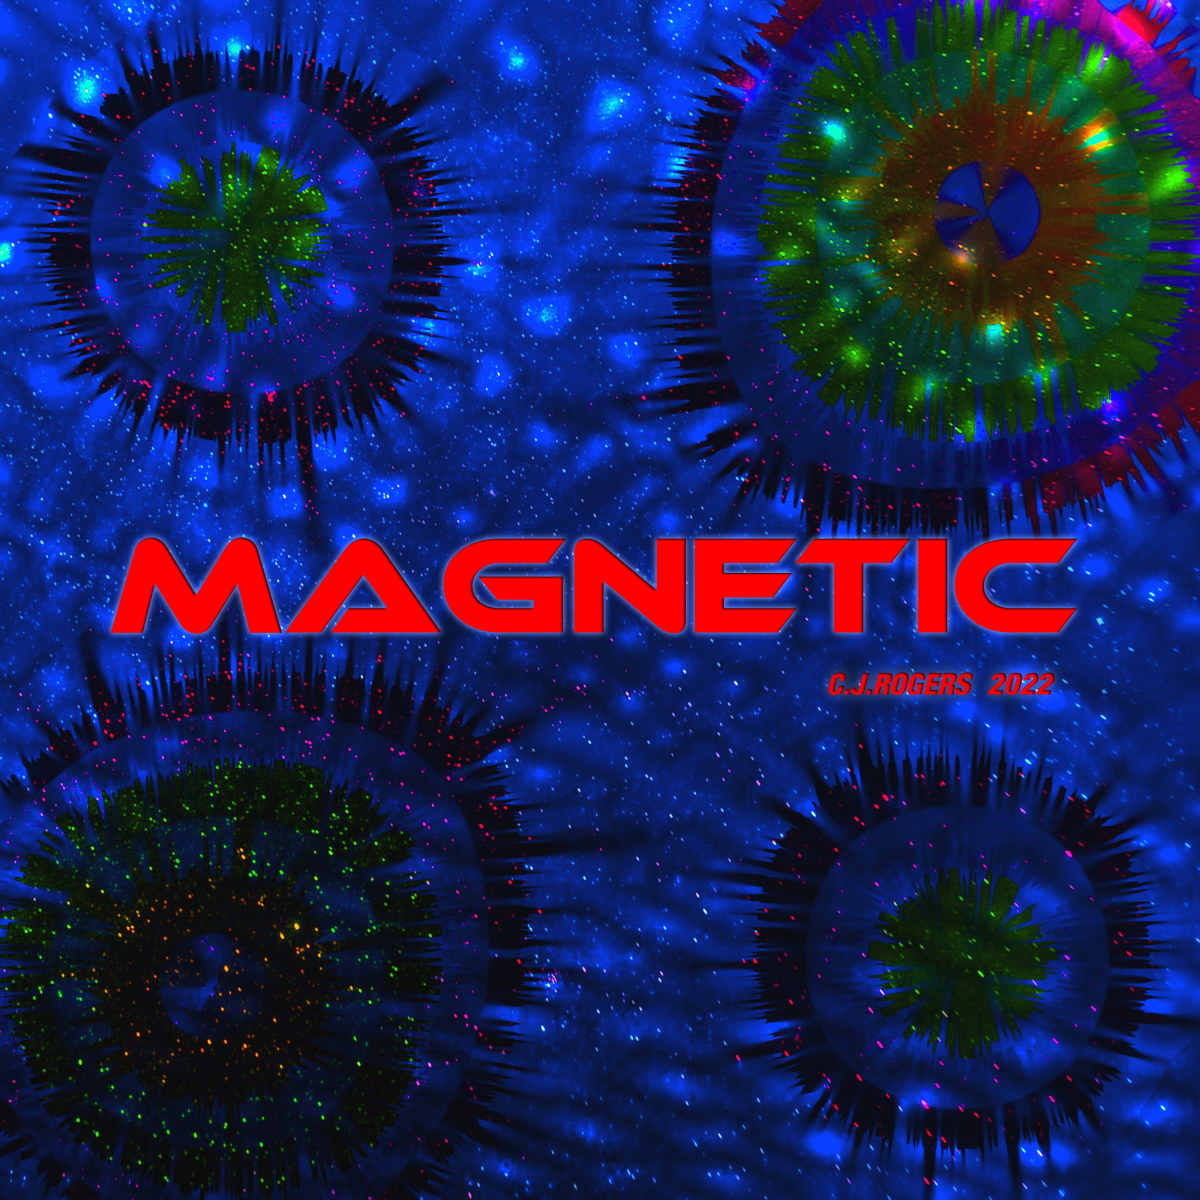 Magnetic - Fullsize Cover Art